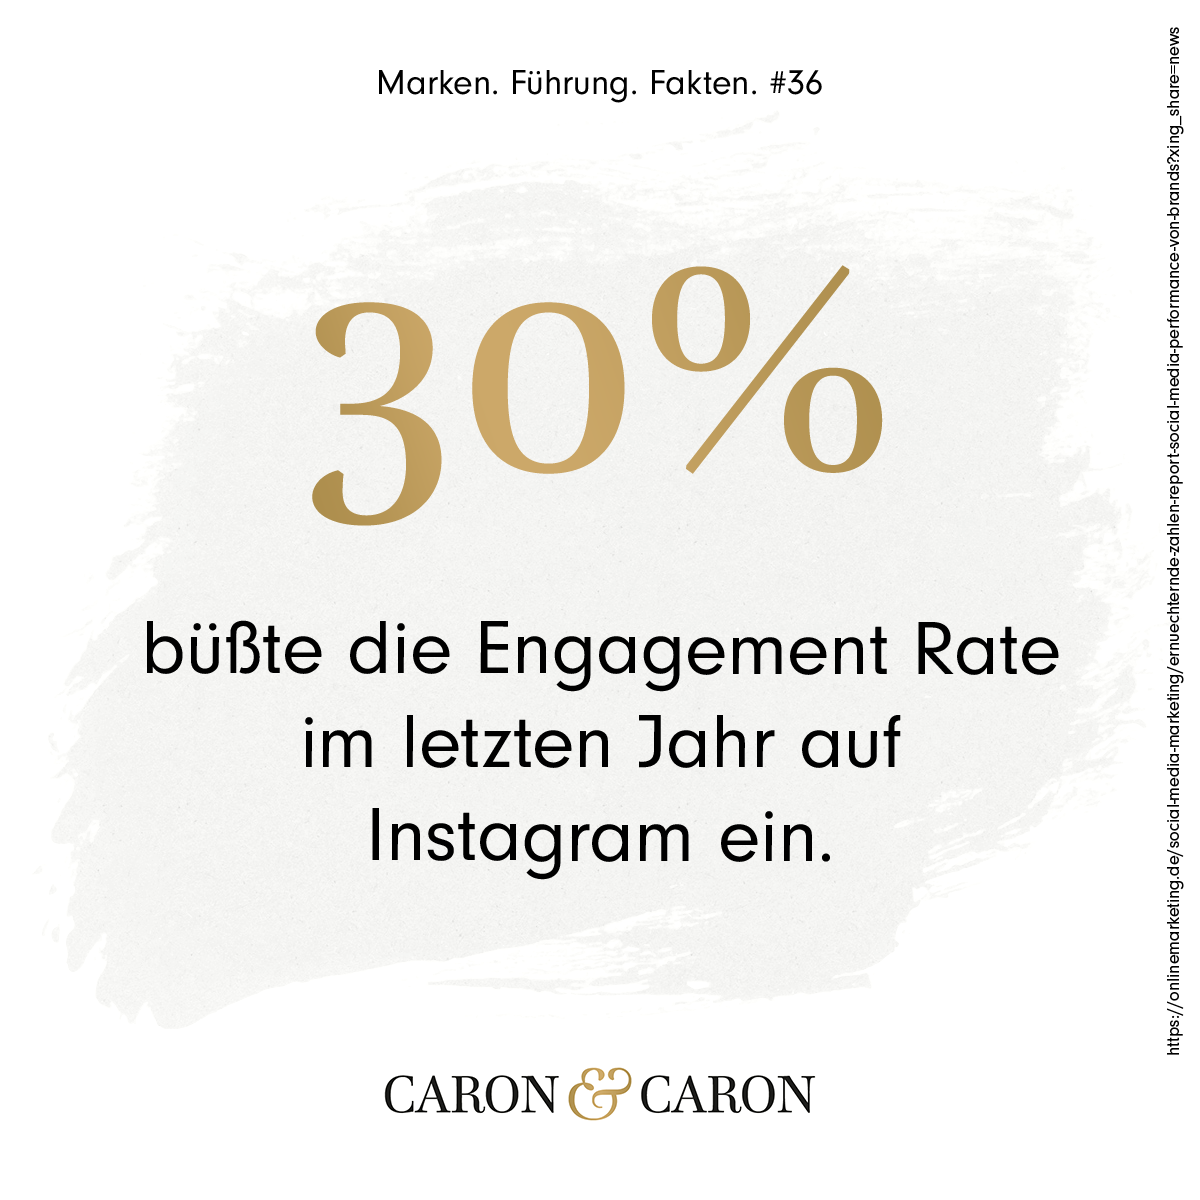 Im letzten Jahr ist die Engagement Rate auf Instagram um 30 Prozent gesunken! - Beitrag von CARON & CARON